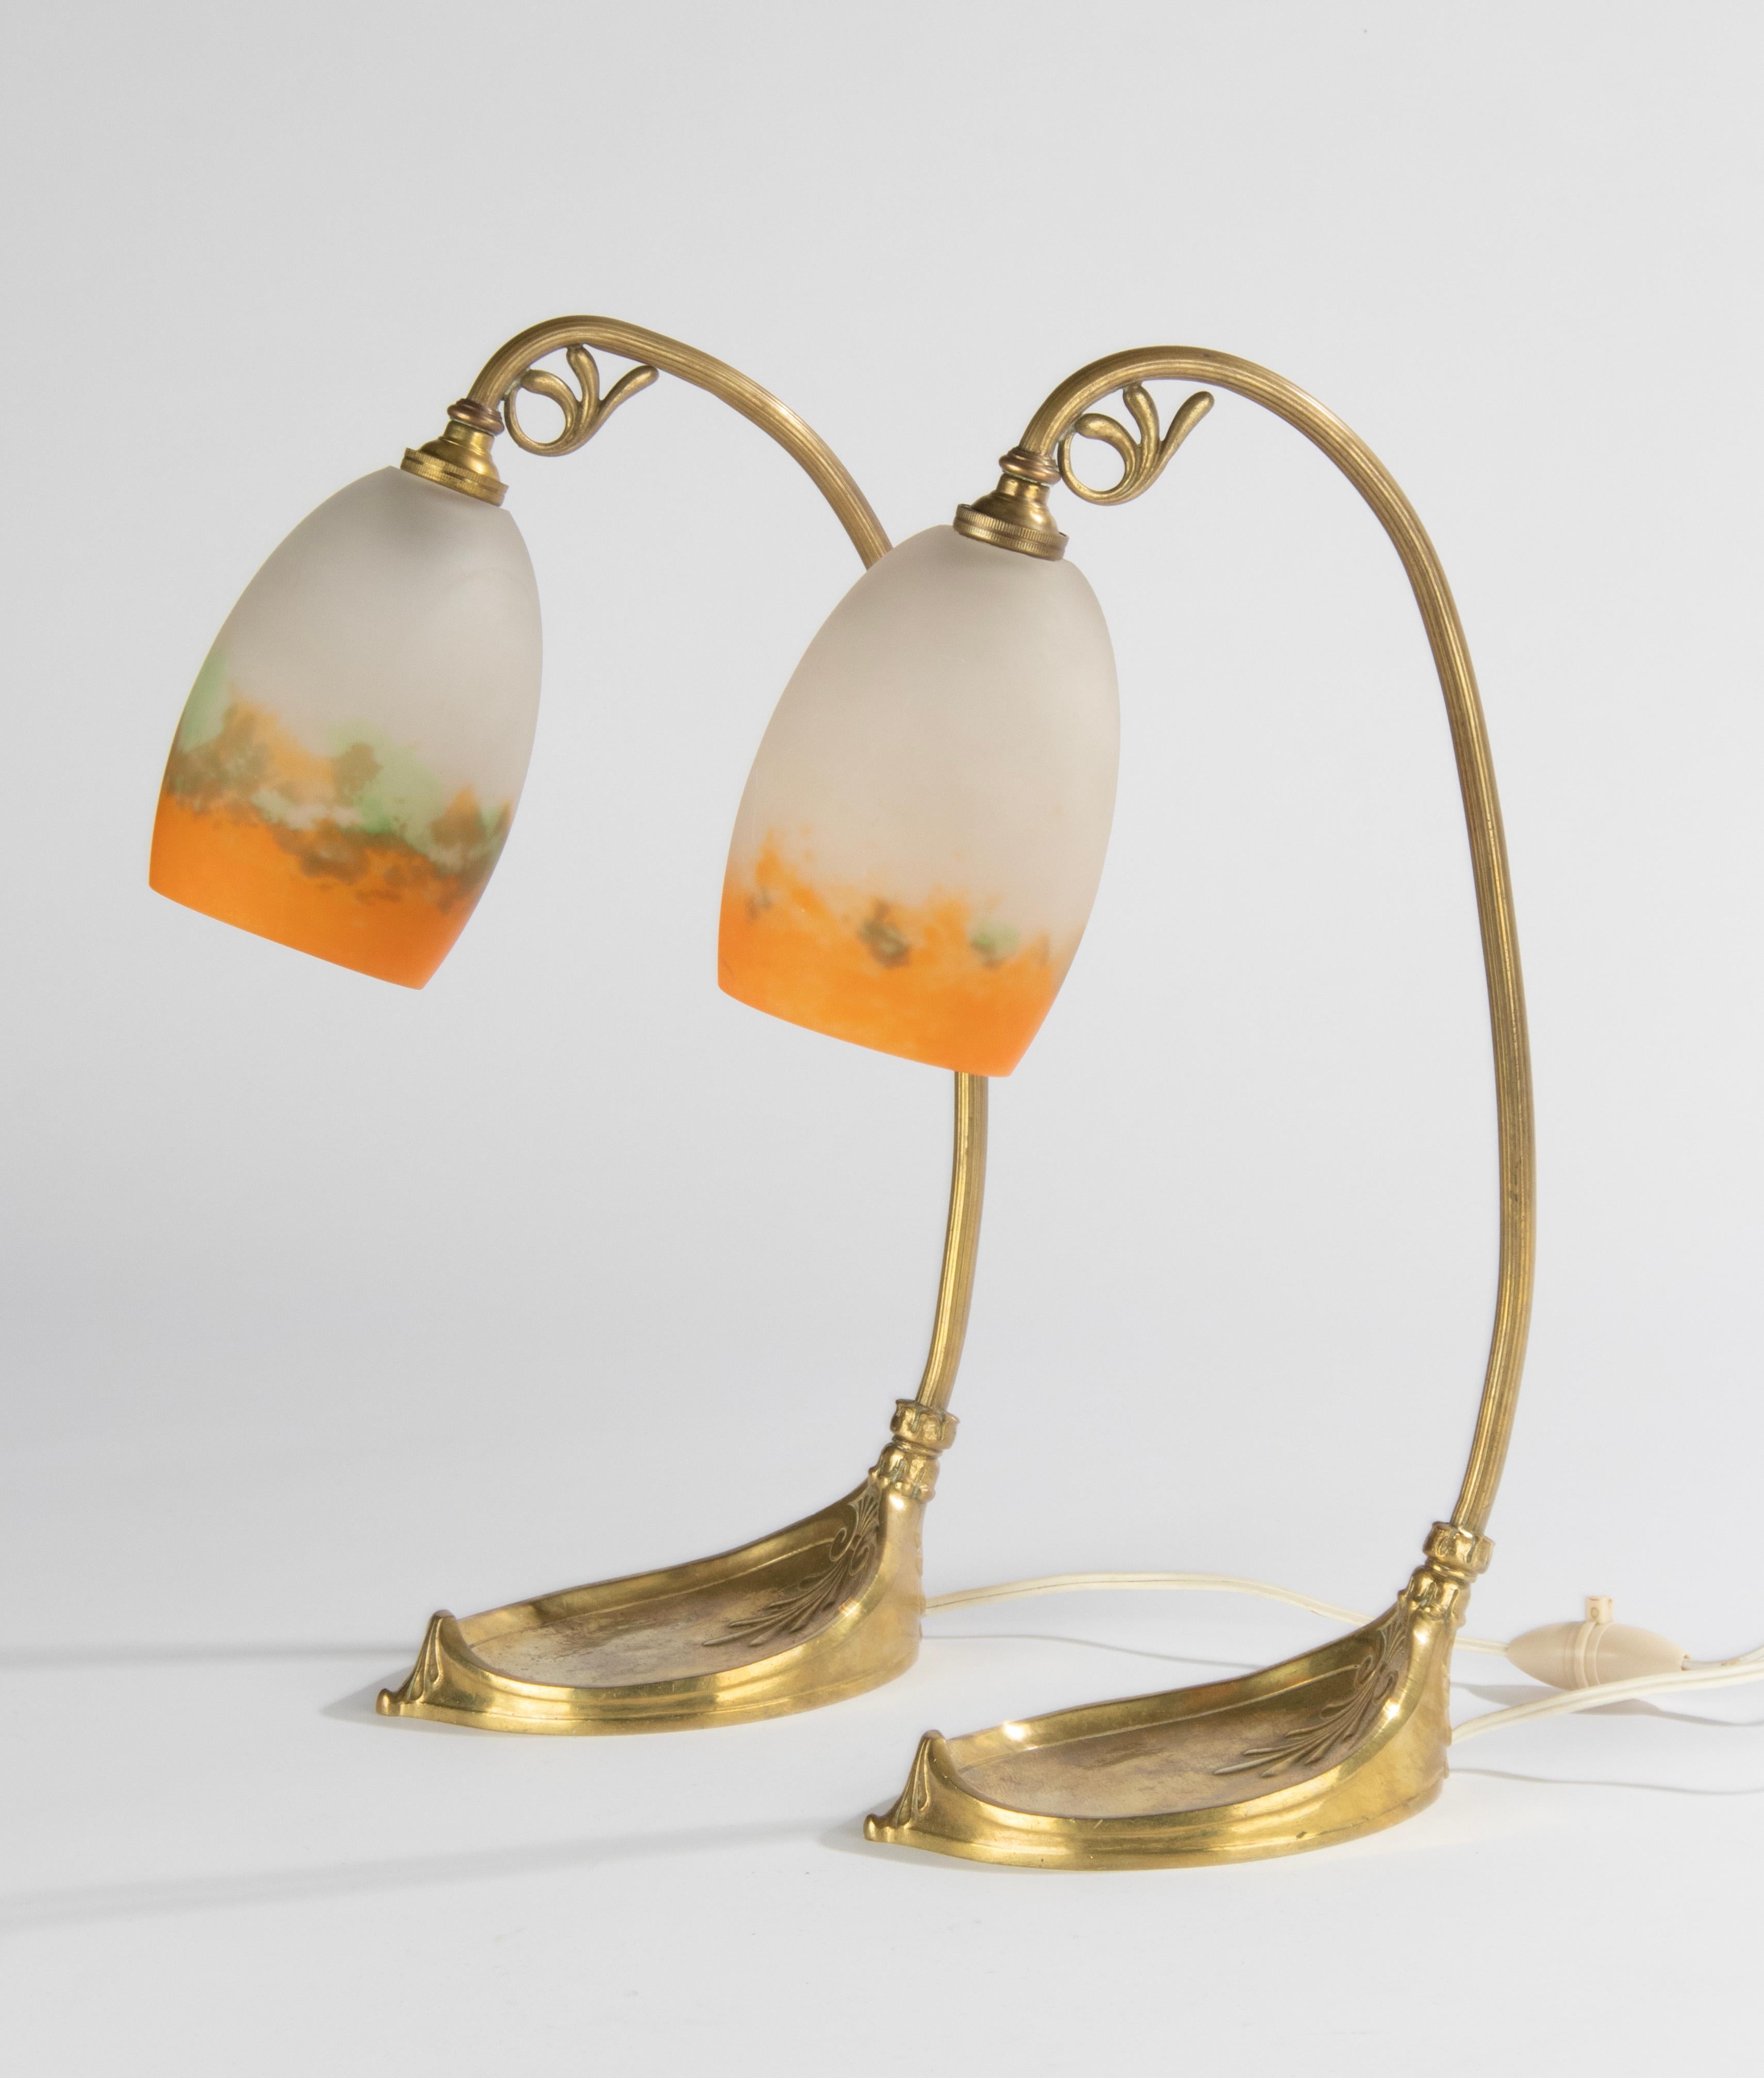 Ein Paar Muller-Tischlampen aus der französischen Jugendstilzeit. Der Sockel ist aus vergoldeter Bronze/Messing gefertigt. Die Lampen haben Lampenschirme aus Nudelglas (pate de verre), hergestellt und signiert von Muller Frères aus Frankreich. Das